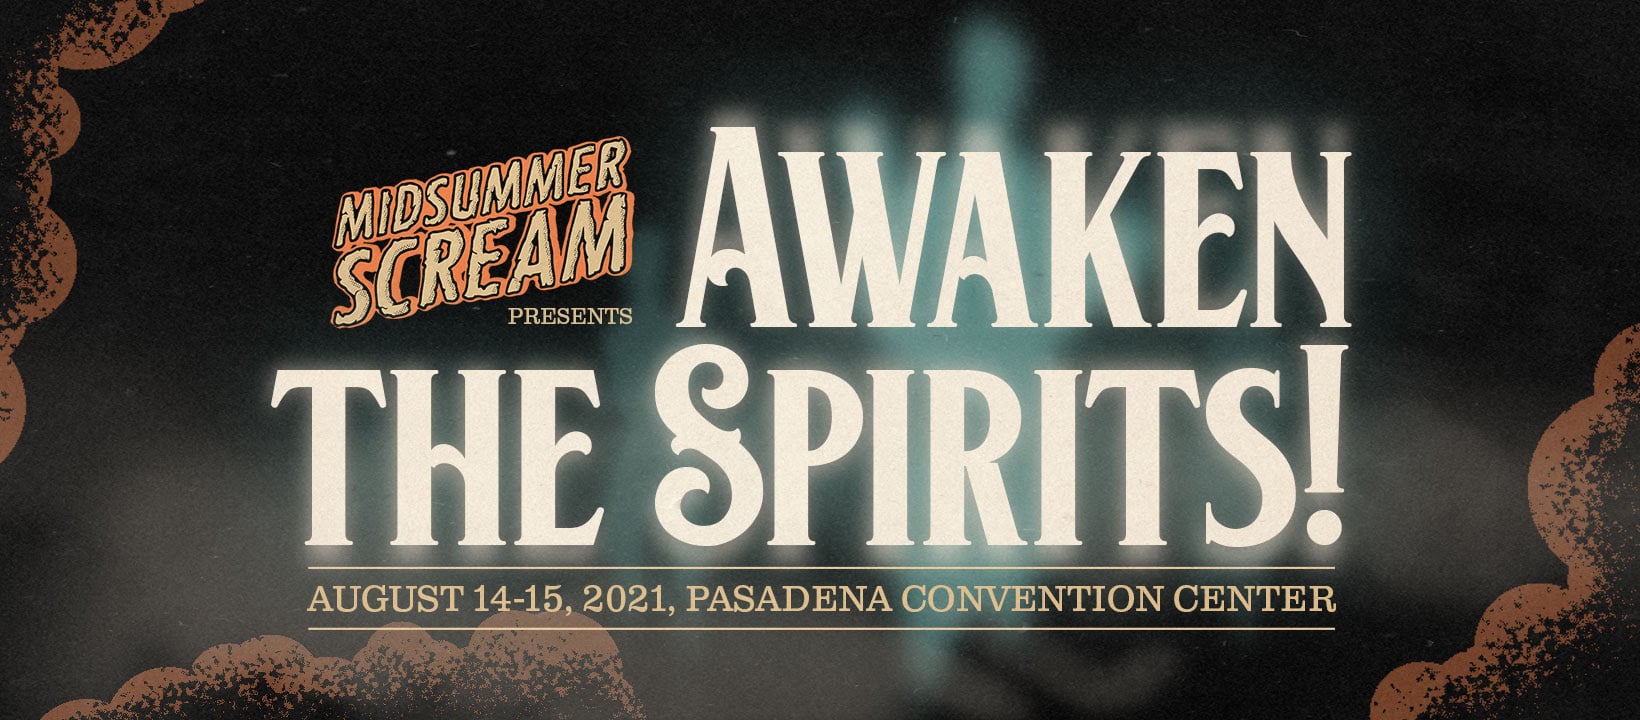 ‘Midsummer Scream Awaken The Spirits!’ Scares Up Event Lineup